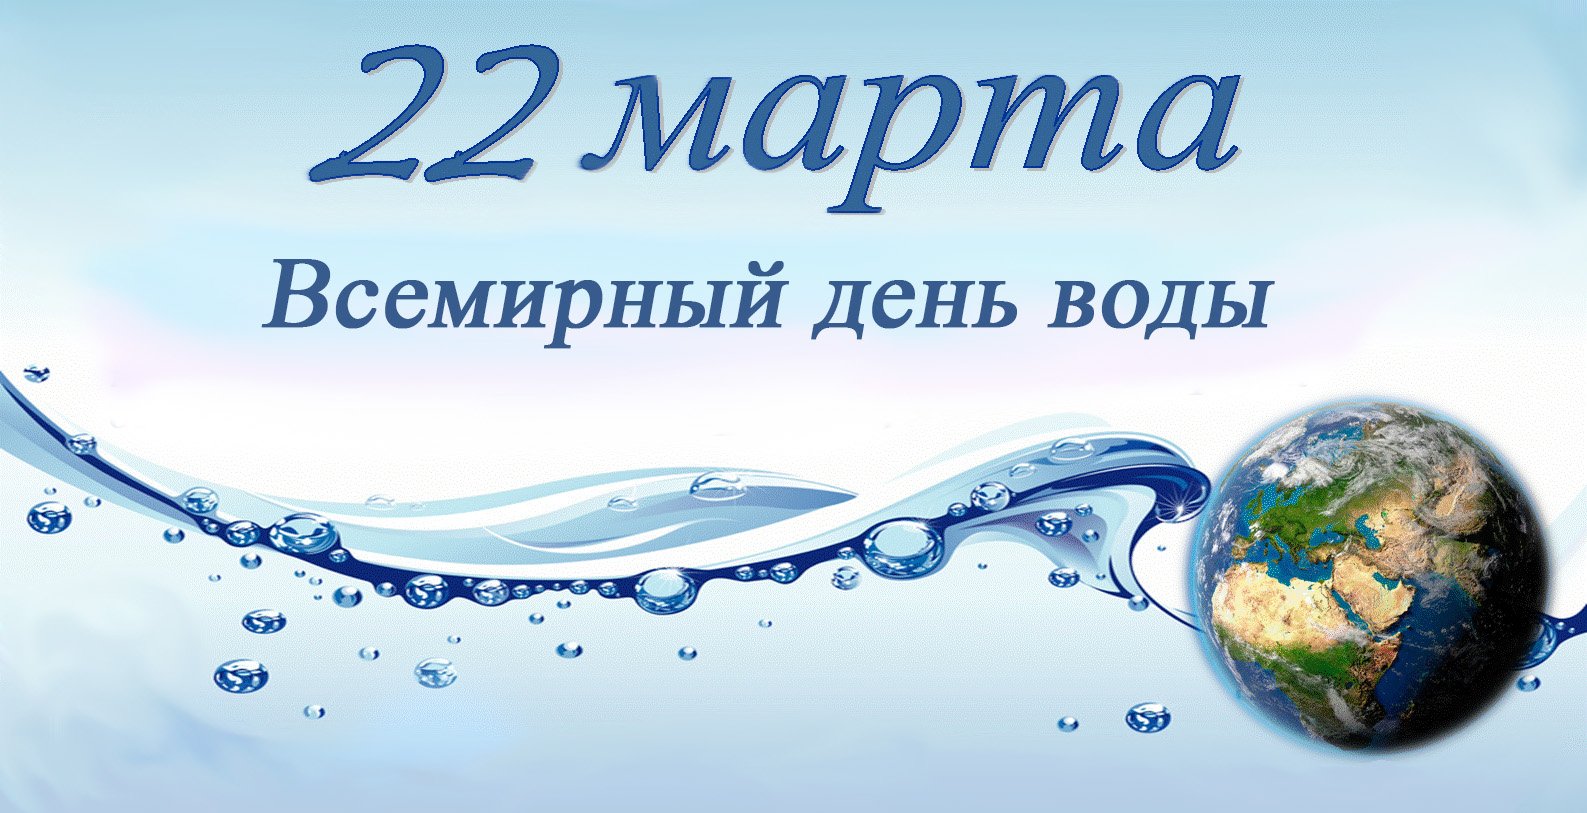 Фотоотчет всемирный день воды. Всемирный день воды. День водных ресурсов. Всемирный день водных ресурсов.